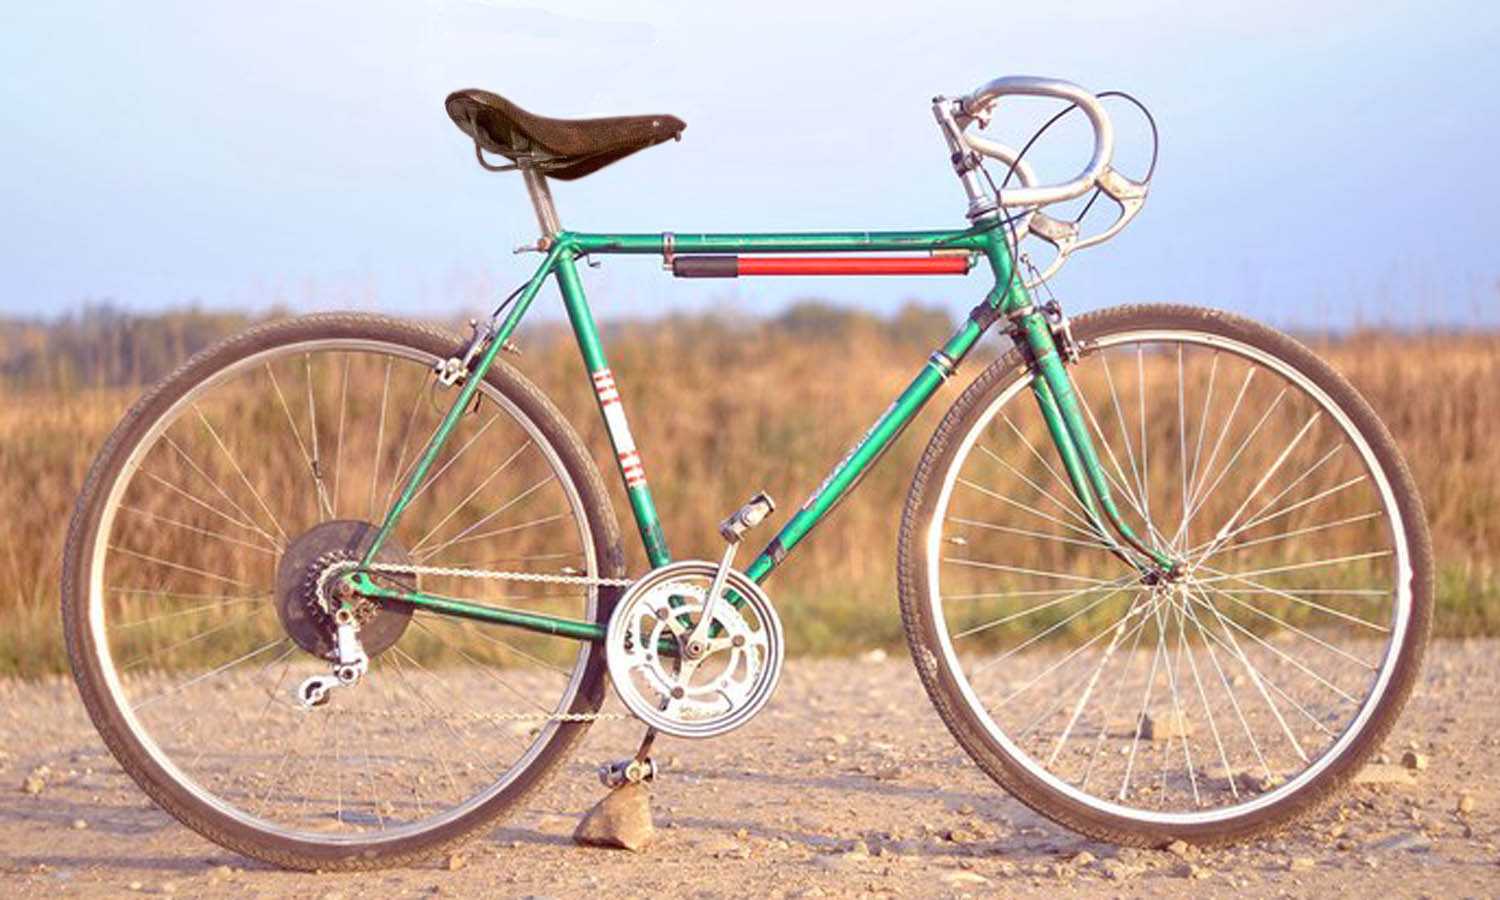 Тюнинг велосипеда аист своими руками: фото, идеи тюнинга